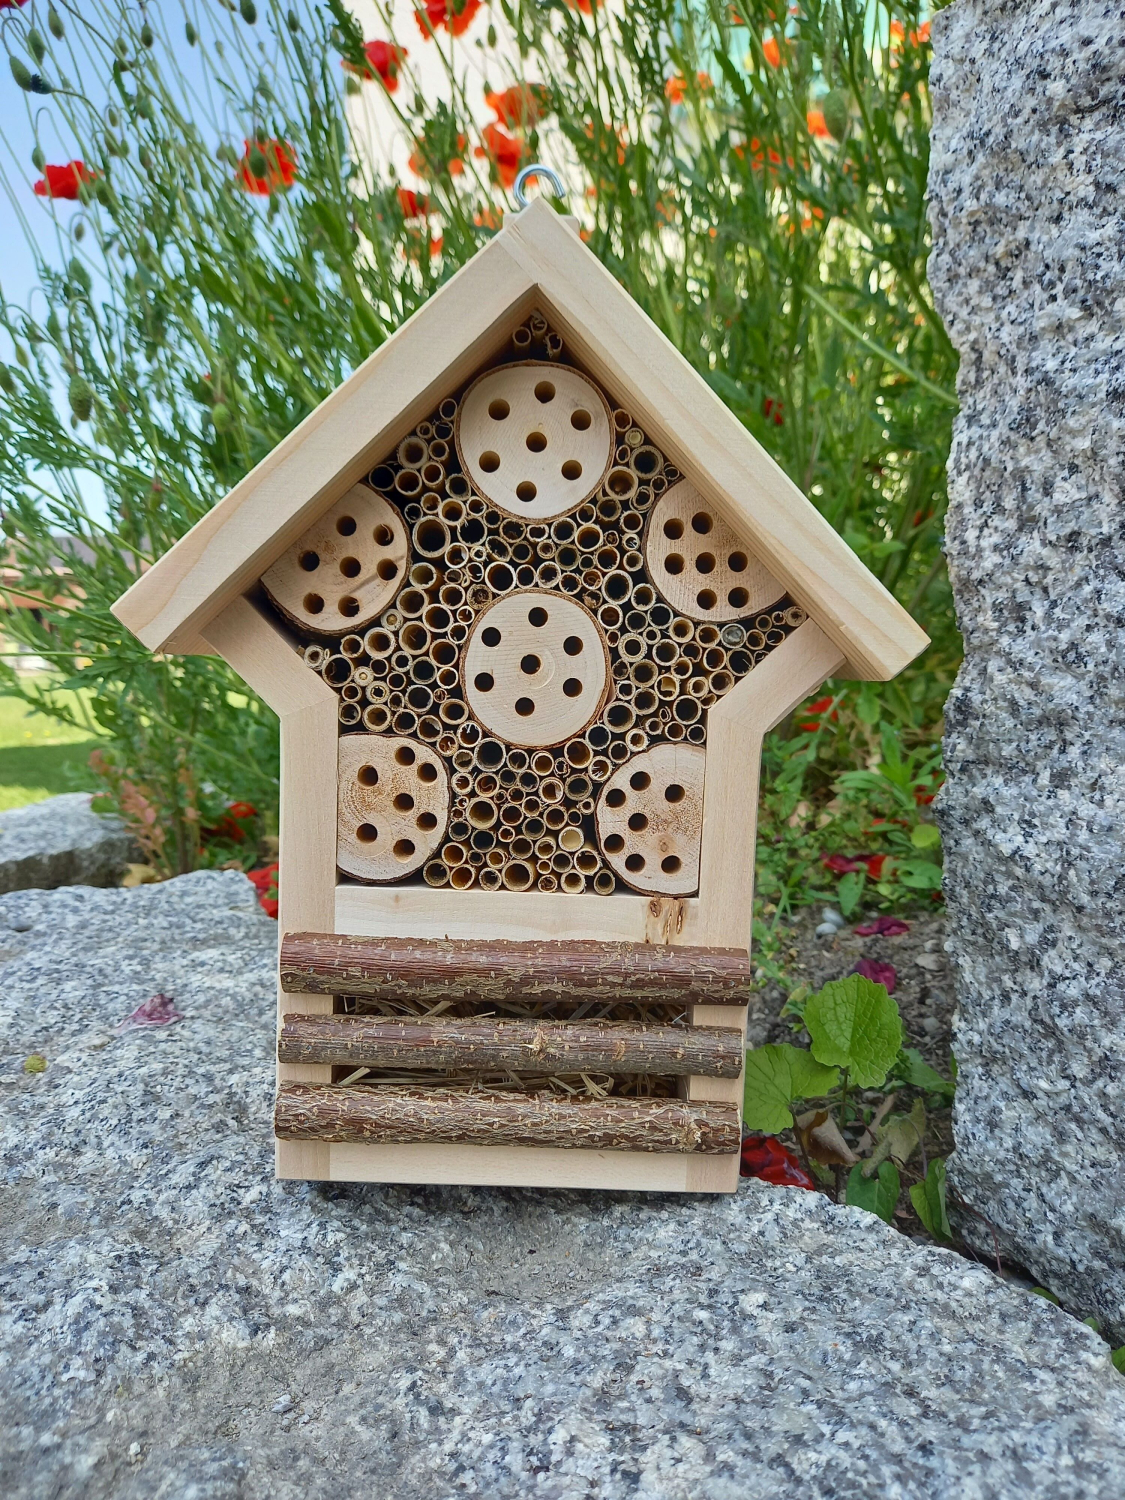 Wildbienen-/Insektenhaus